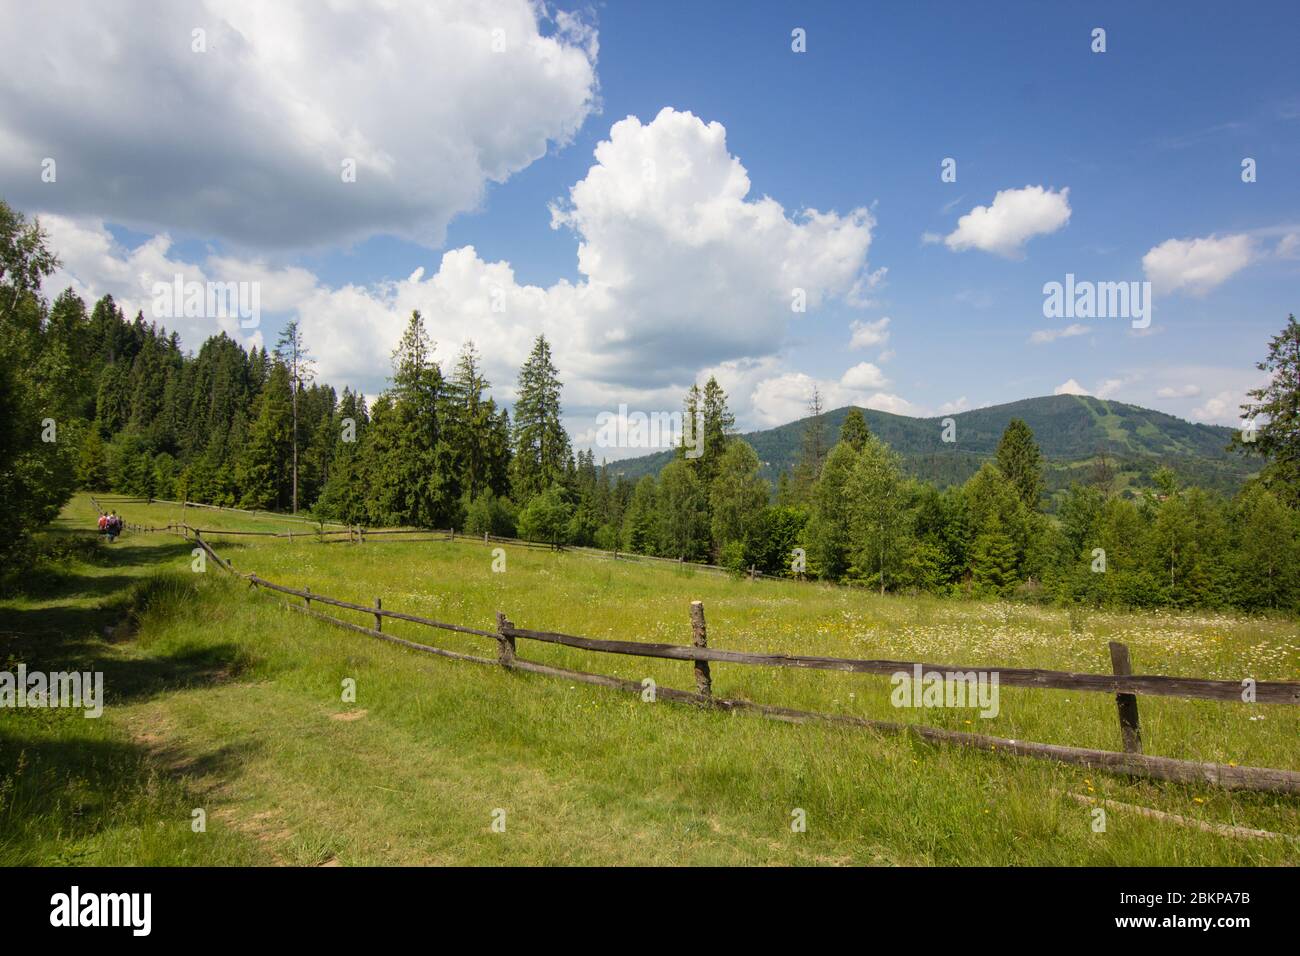 Gras auf grünen Sommerweide mit Holzzaun auf Bauernhof in Karpaten in der Ukraine mit bewölktem blauen Himmel Hintergrund Stockfoto